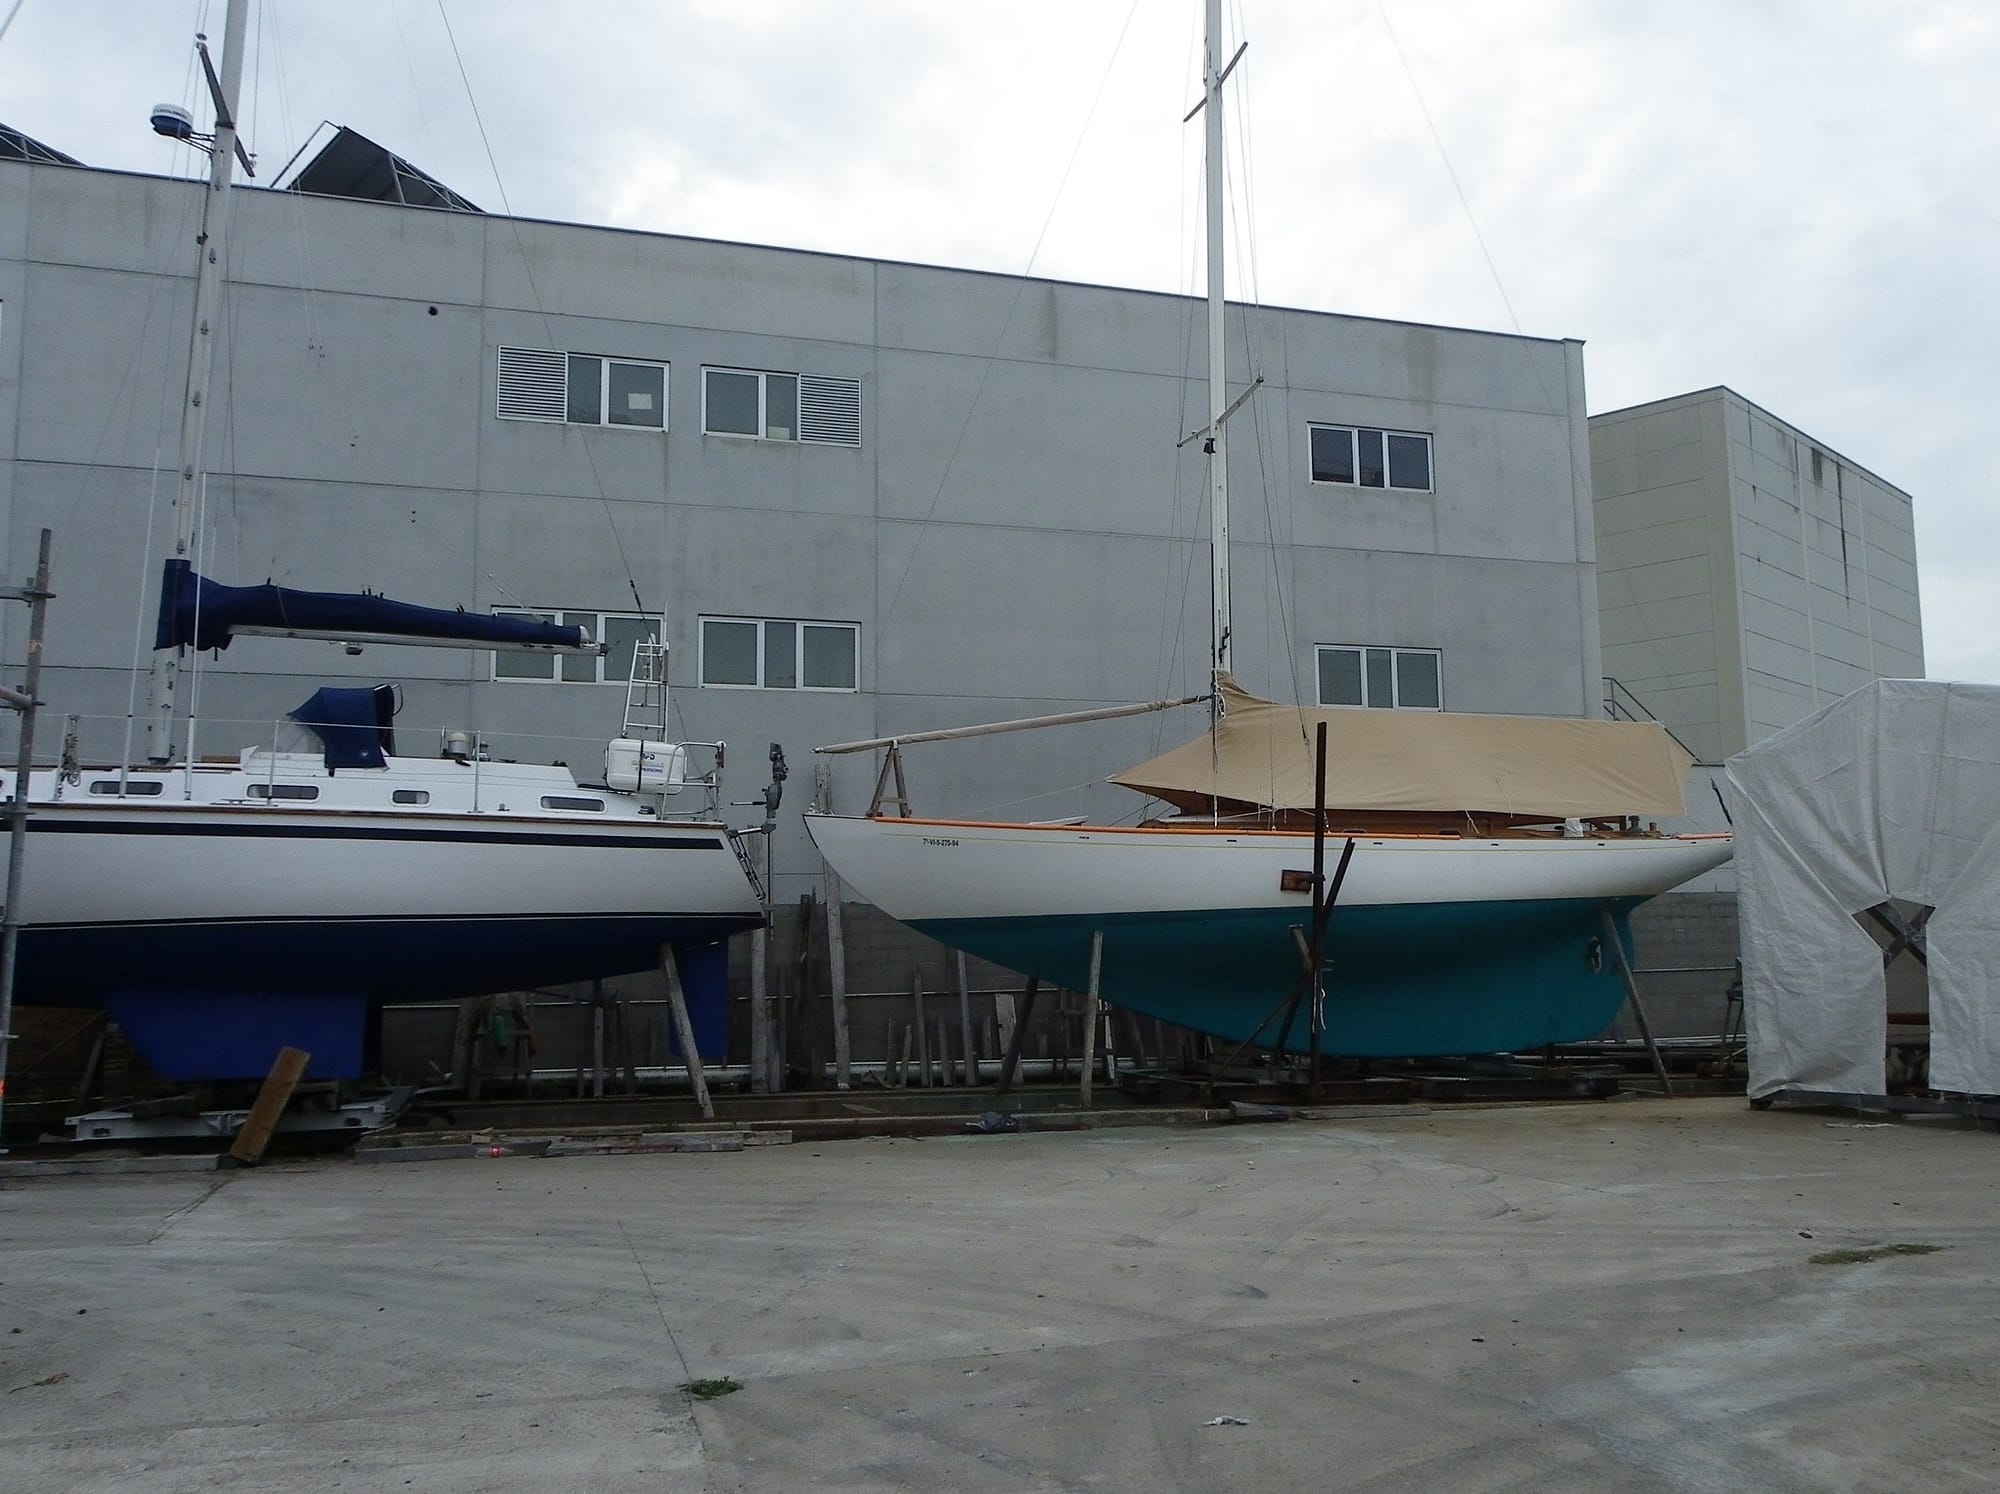 Varada del PINGUINO y el PAPAGENO en Astilleros Lagos